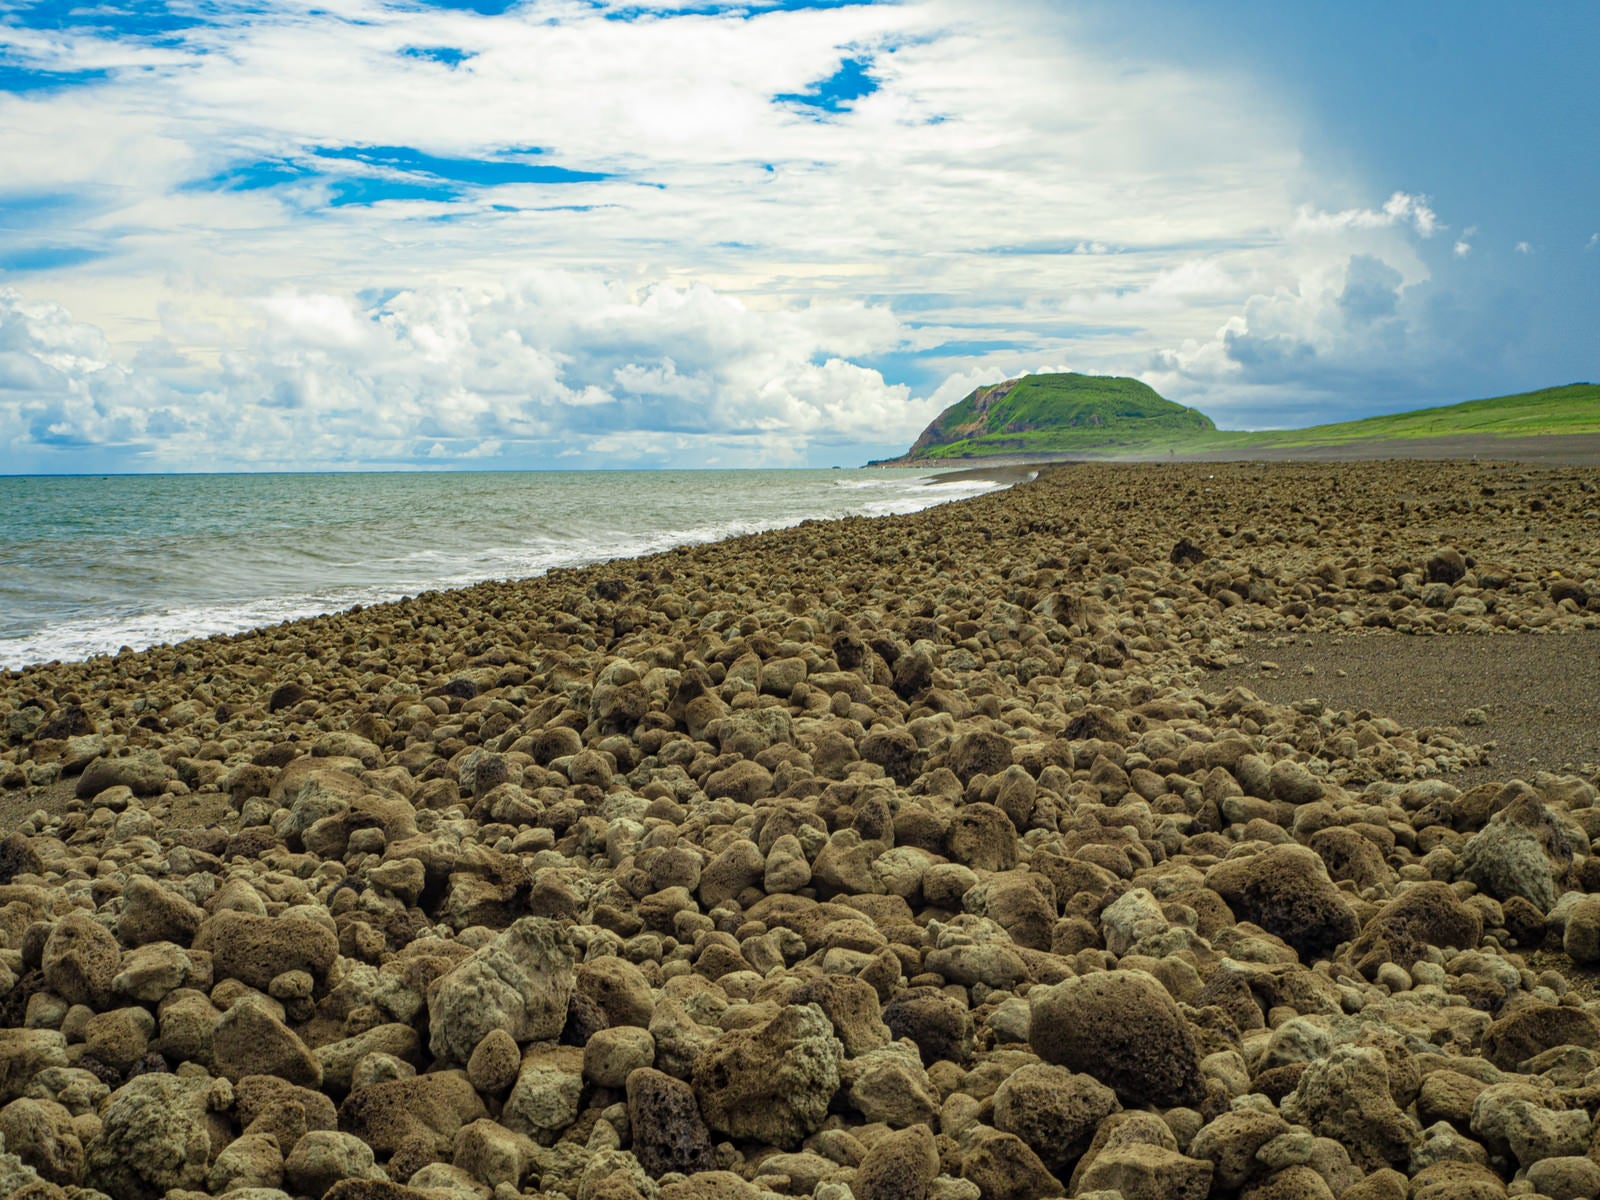 「翁浜に漂着した無数の岩塊と摺鉢山」の写真